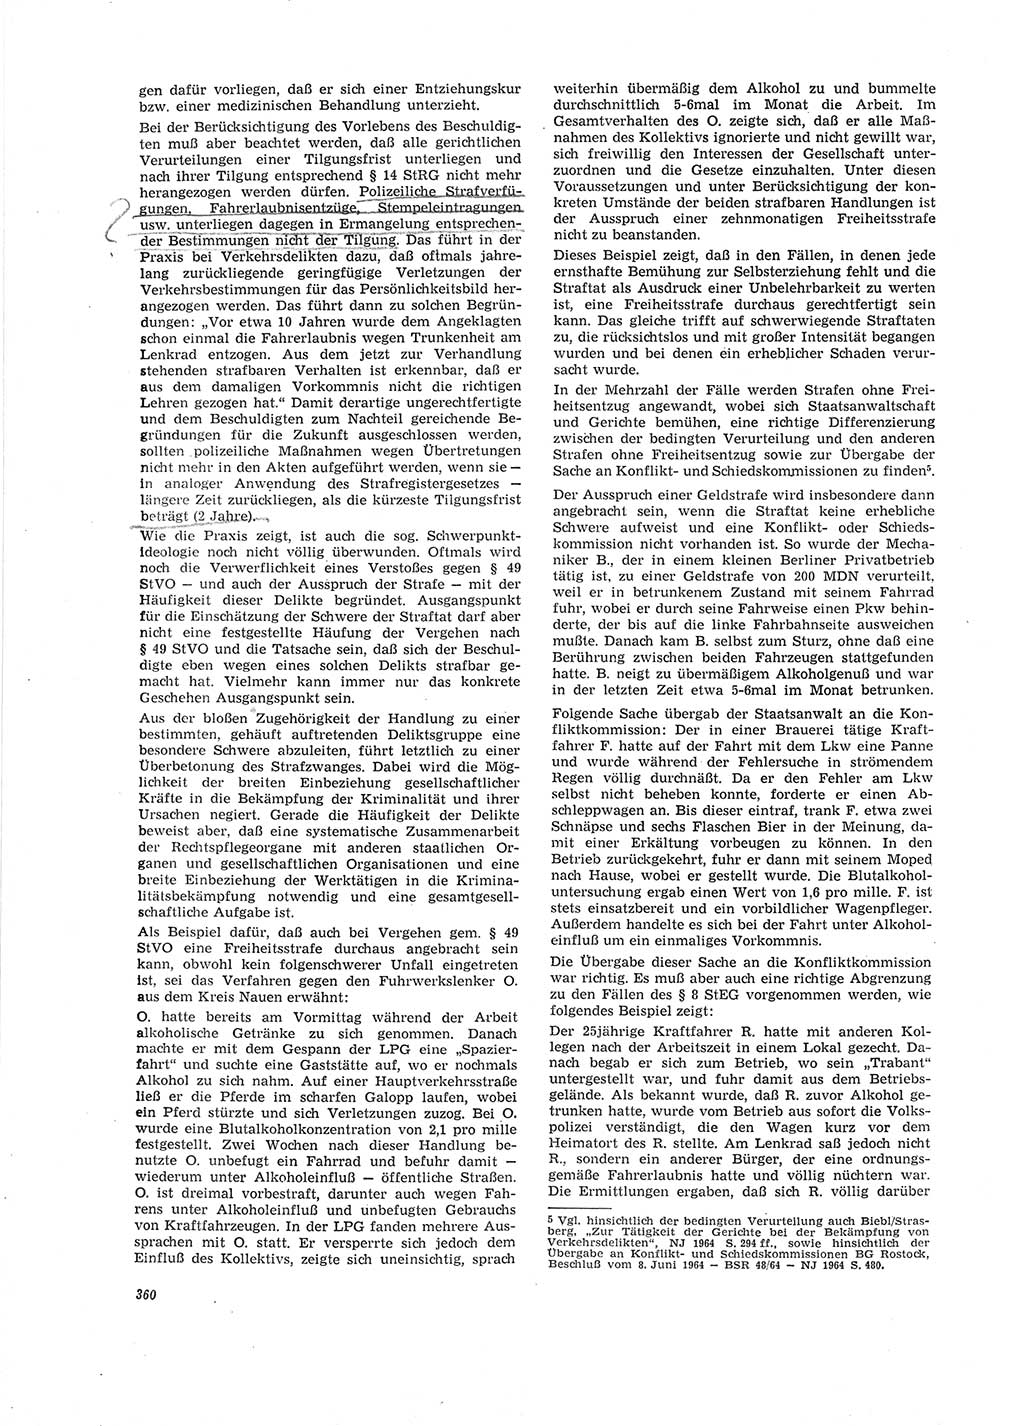 Neue Justiz (NJ), Zeitschrift für Recht und Rechtswissenschaft [Deutsche Demokratische Republik (DDR)], 19. Jahrgang 1965, Seite 360 (NJ DDR 1965, S. 360)